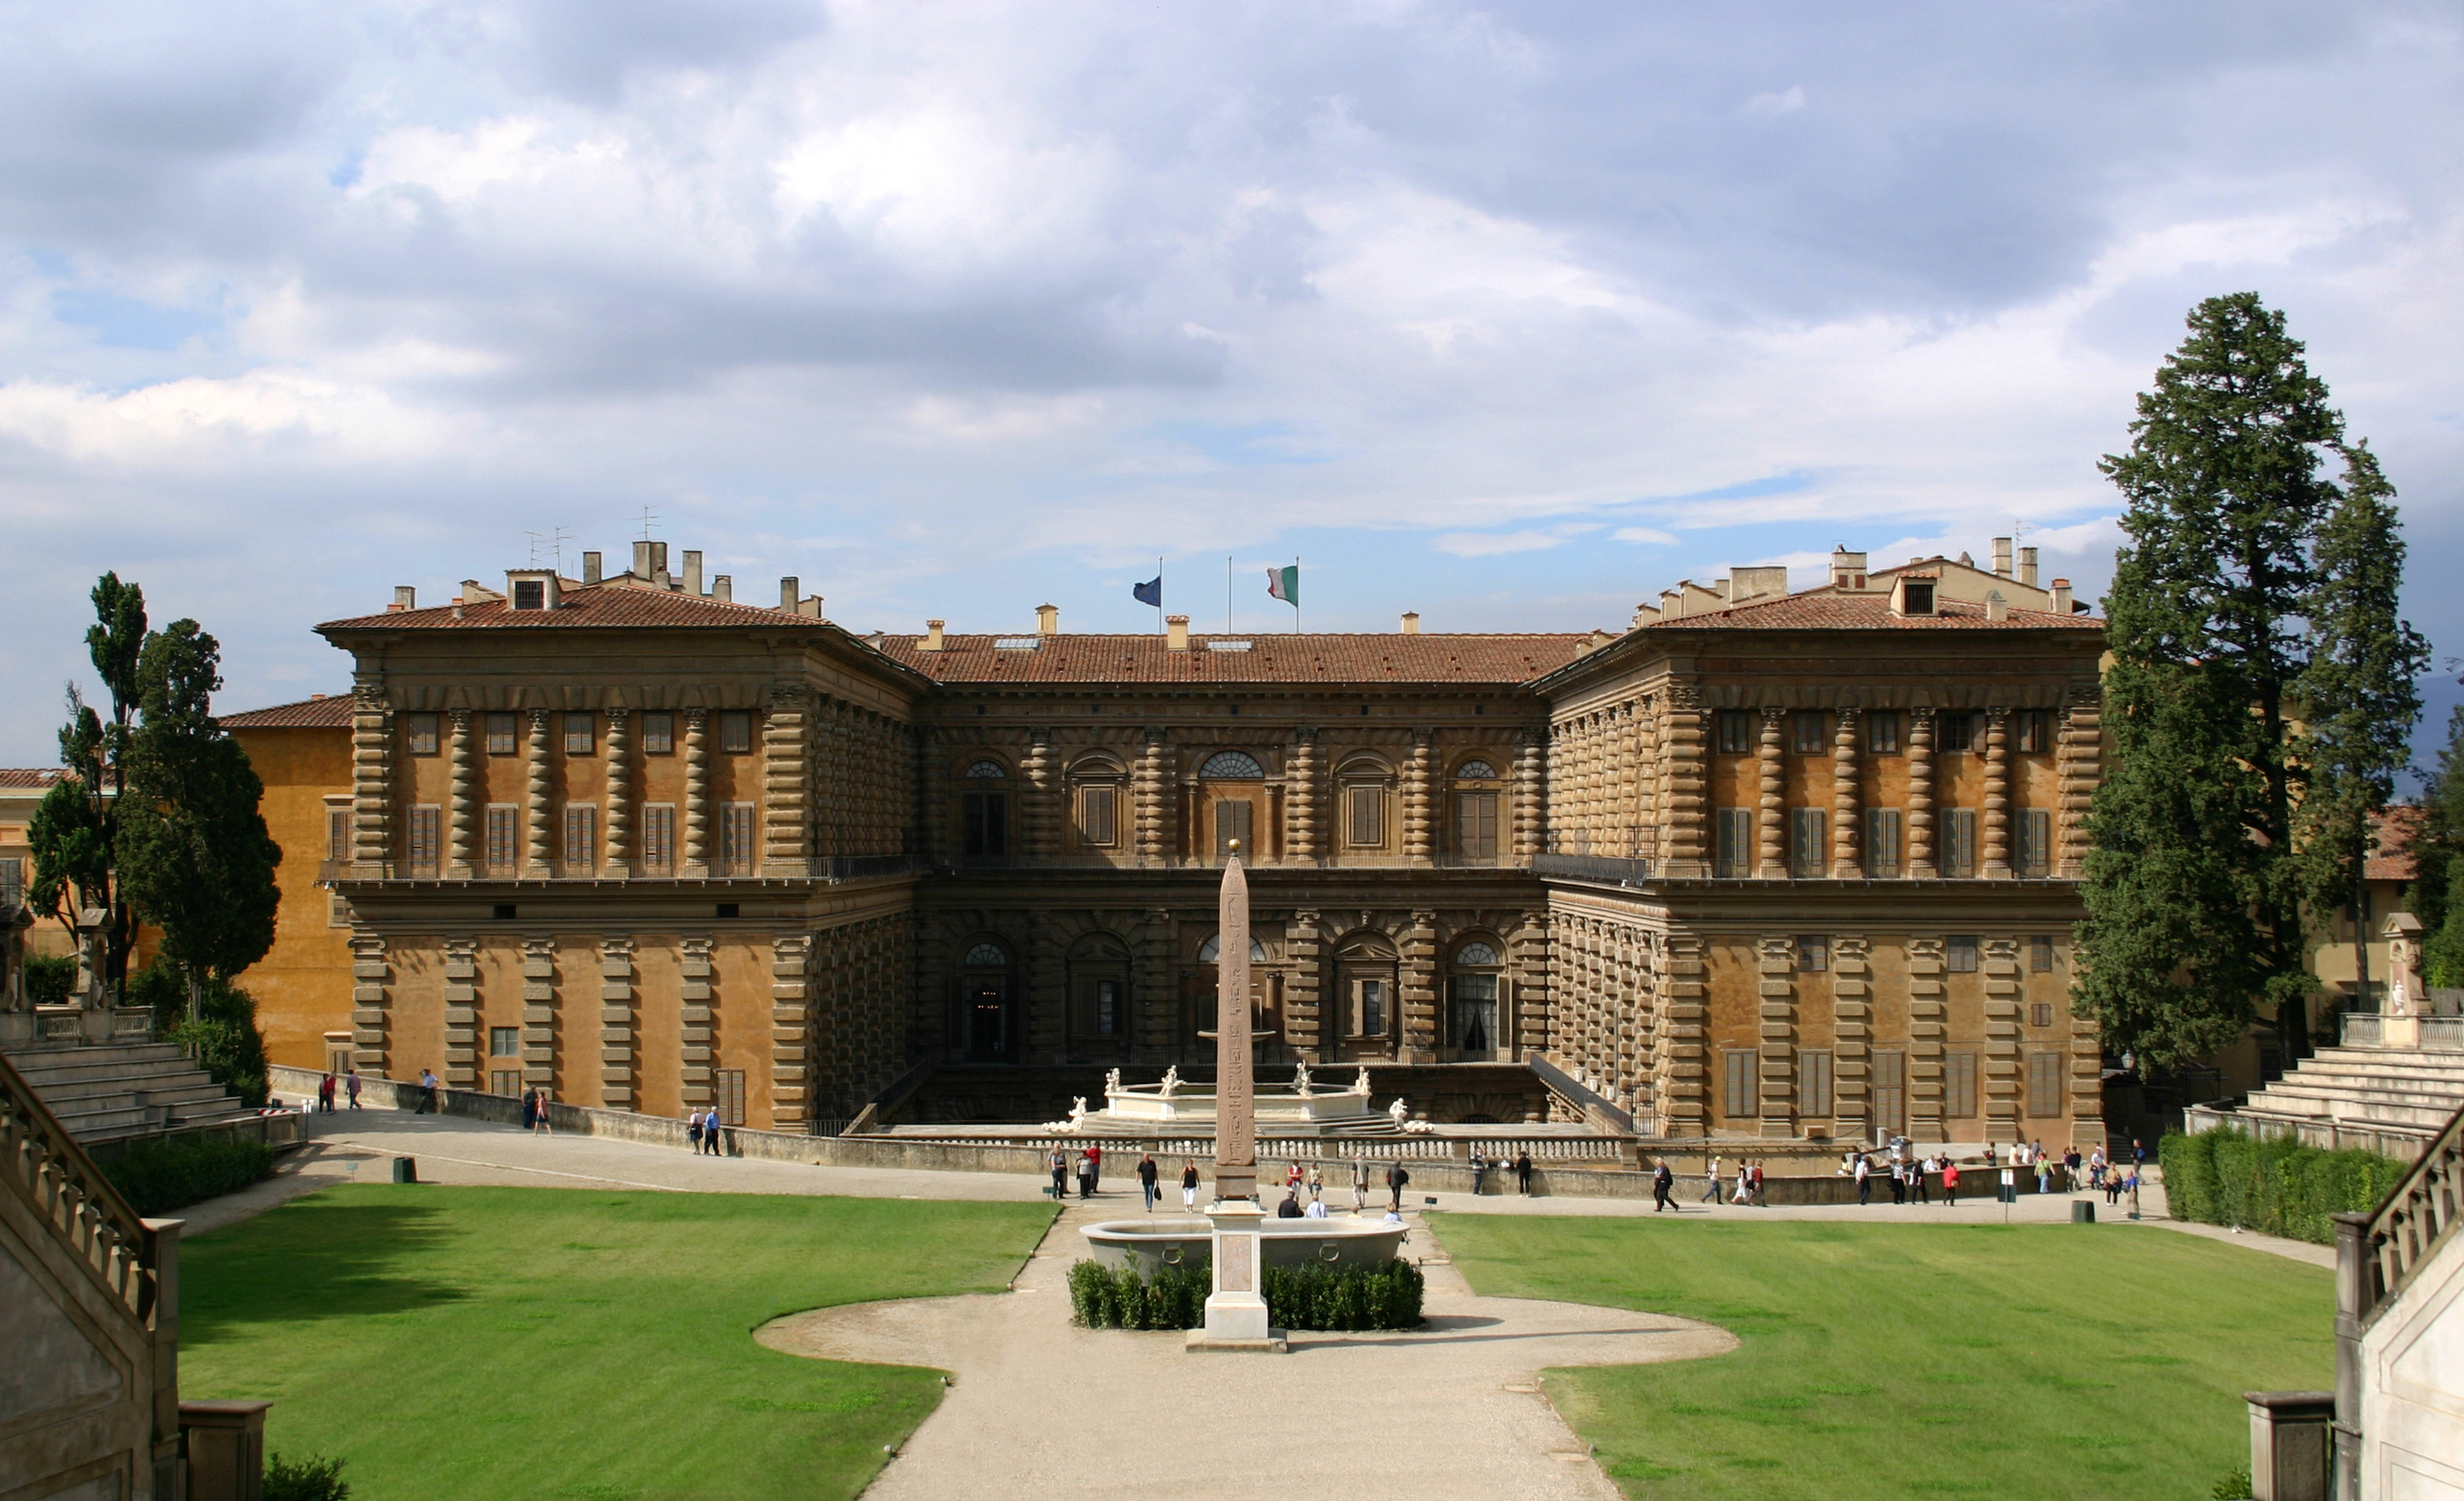  In mostra a Palazzo Pitti i costumi di scena di Maria Callas e Romy Schneider